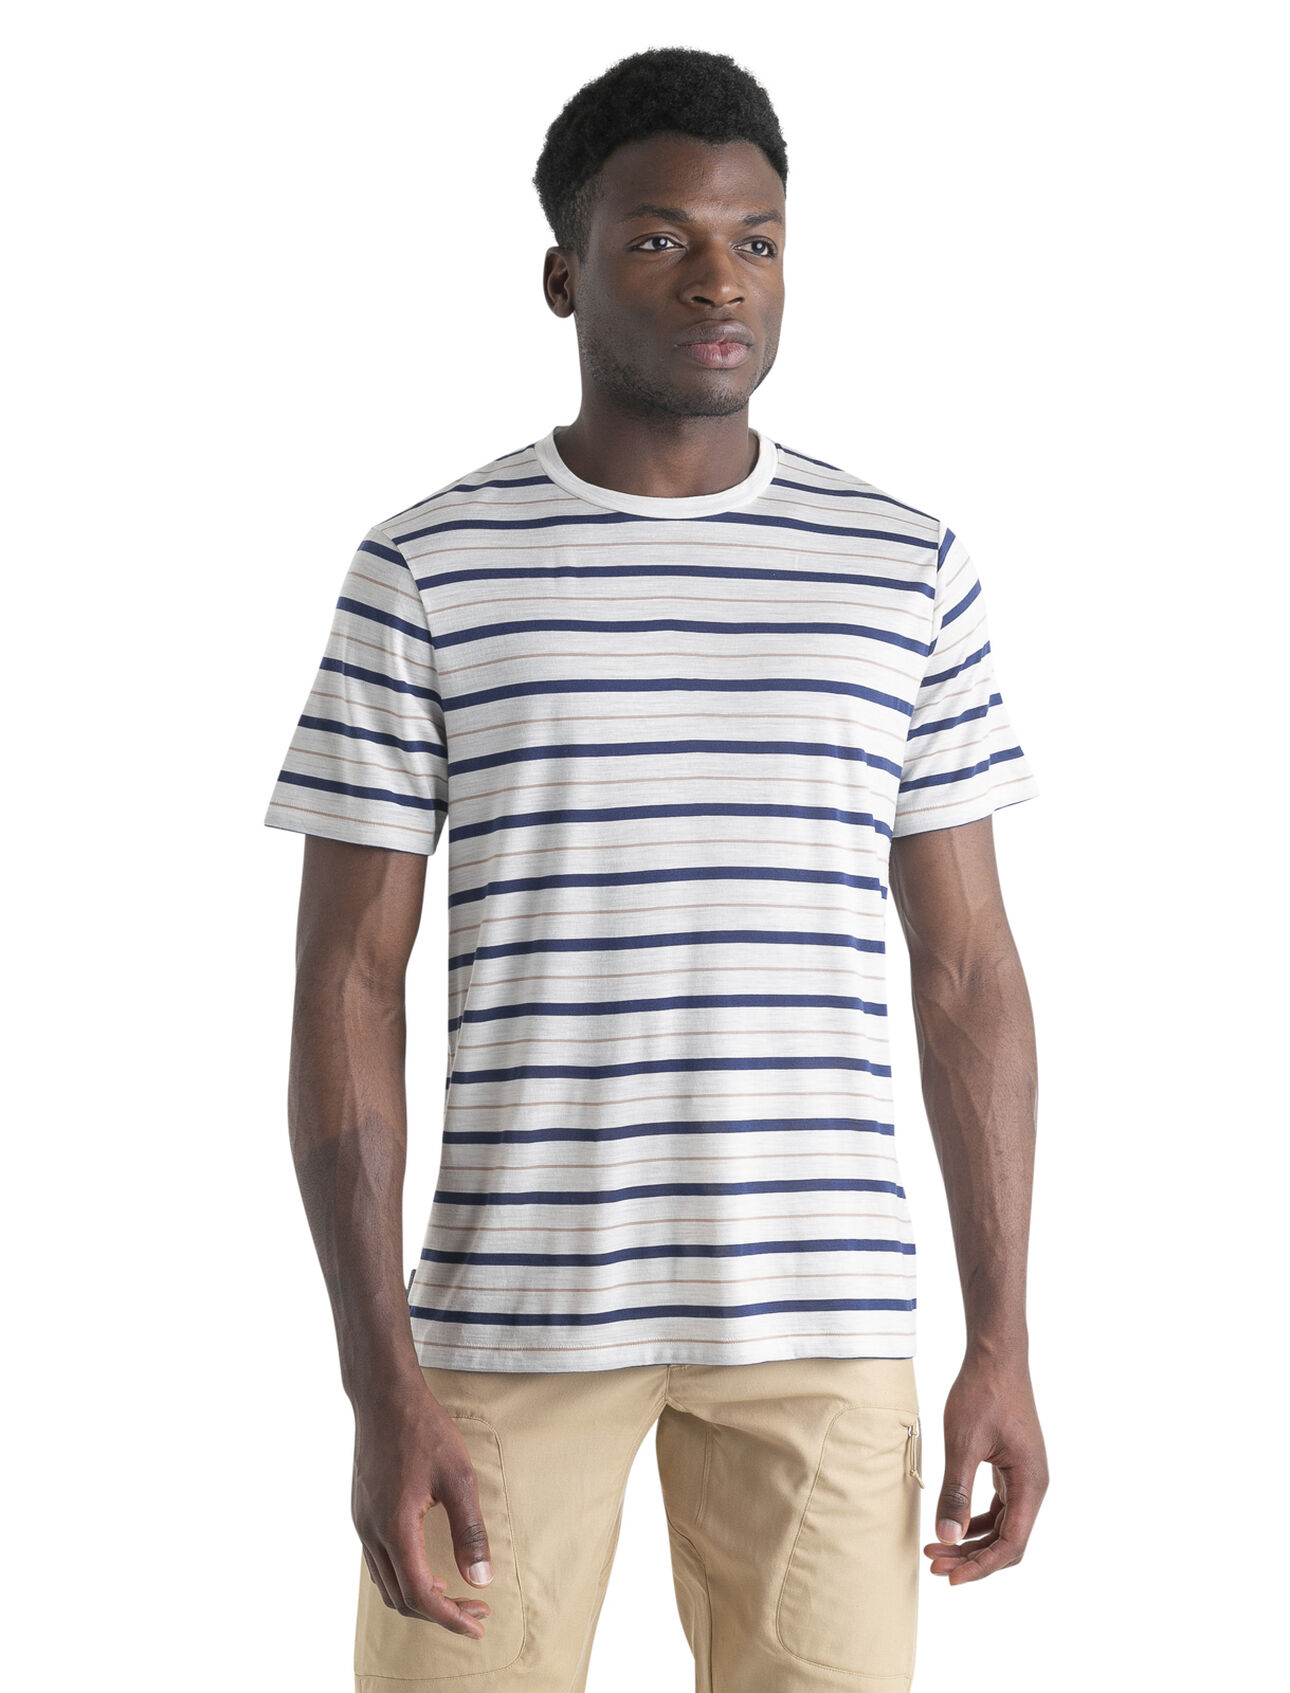 Heren Gestreept Wave T-shirt van merinowolmix De Wave is een gestreept T-shirt met korte mouwen. De top heeft een klassieke stijl en is gemaakt van een lichtgewicht merinowolmix van onze ademende en natuurlijke Cool-Lite™ jersey, perfect voor warm weer.